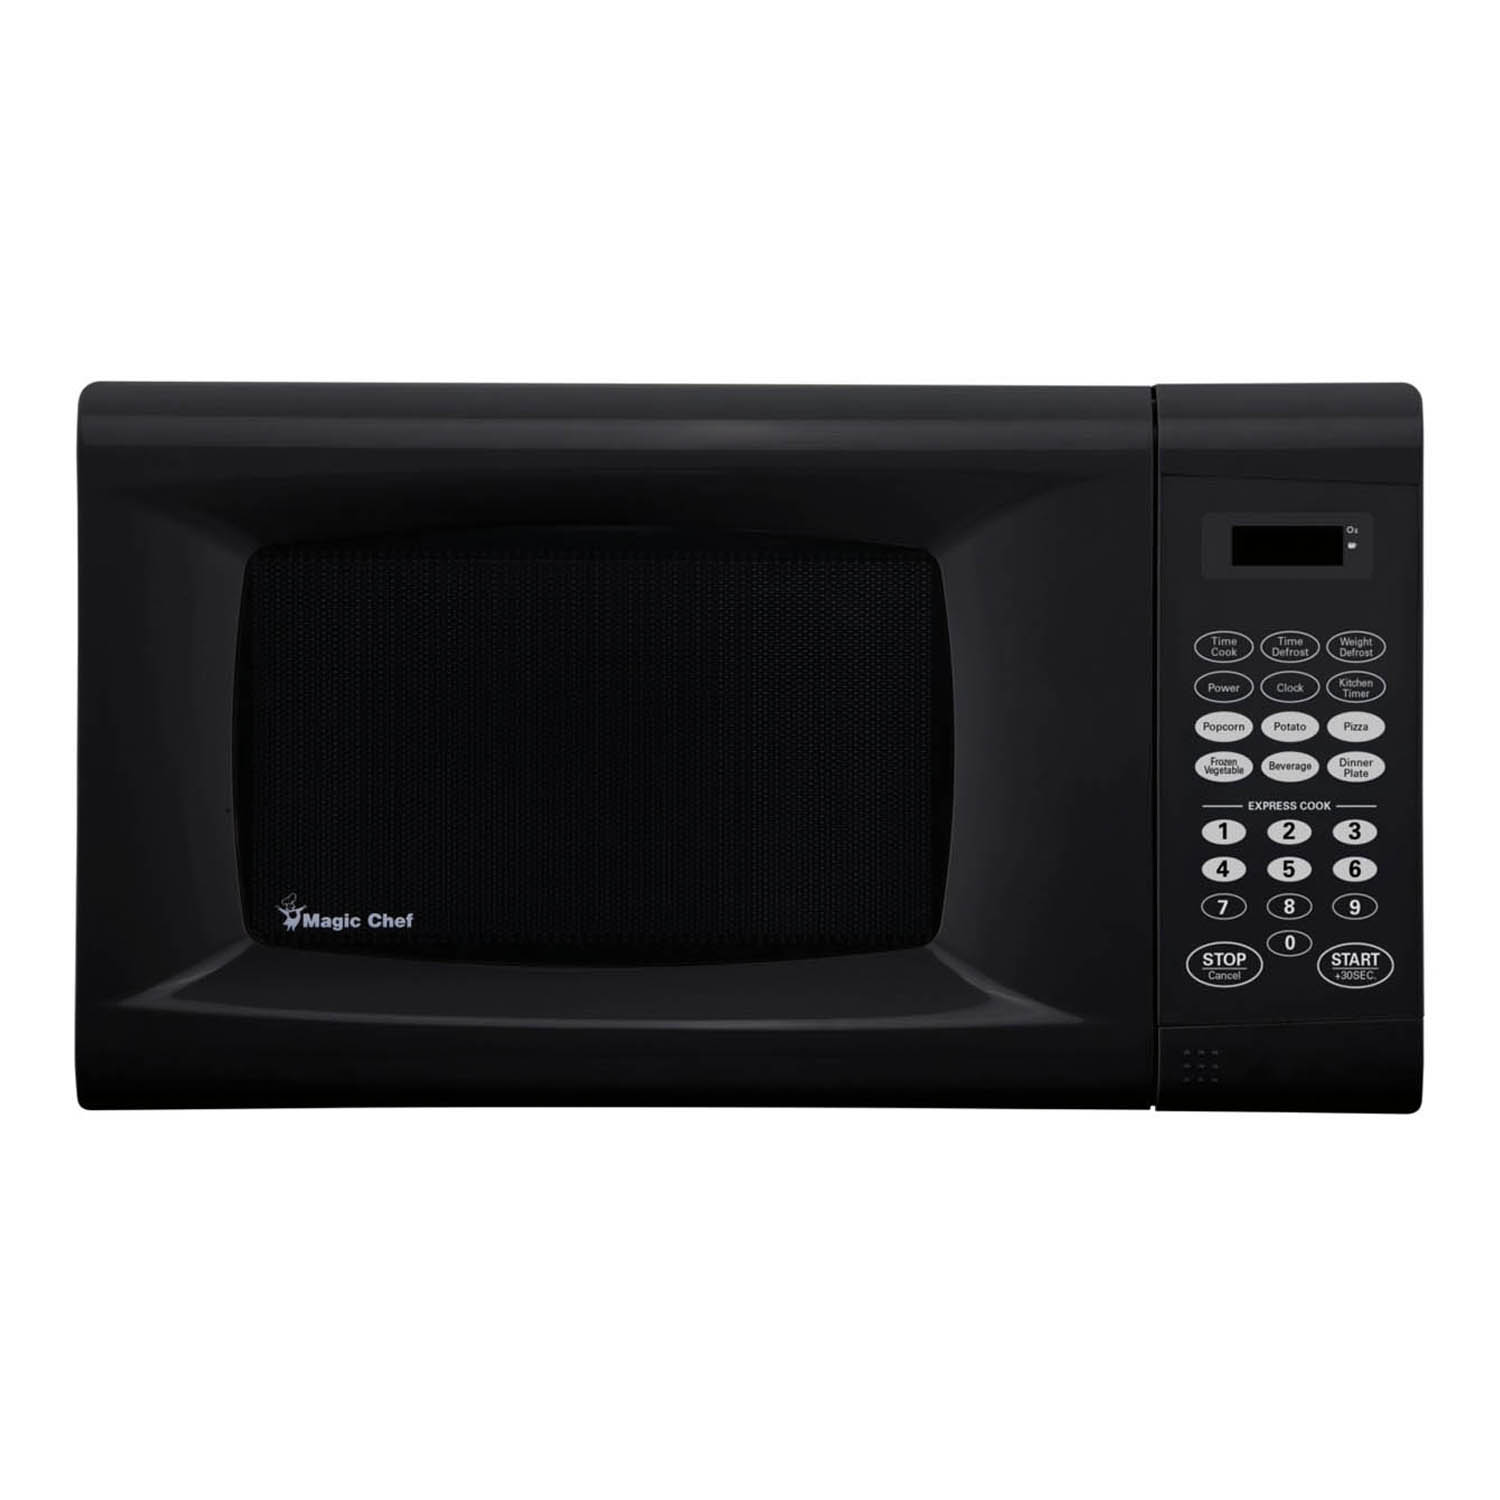 900 Watt Microwave in Black - image 4 of 4